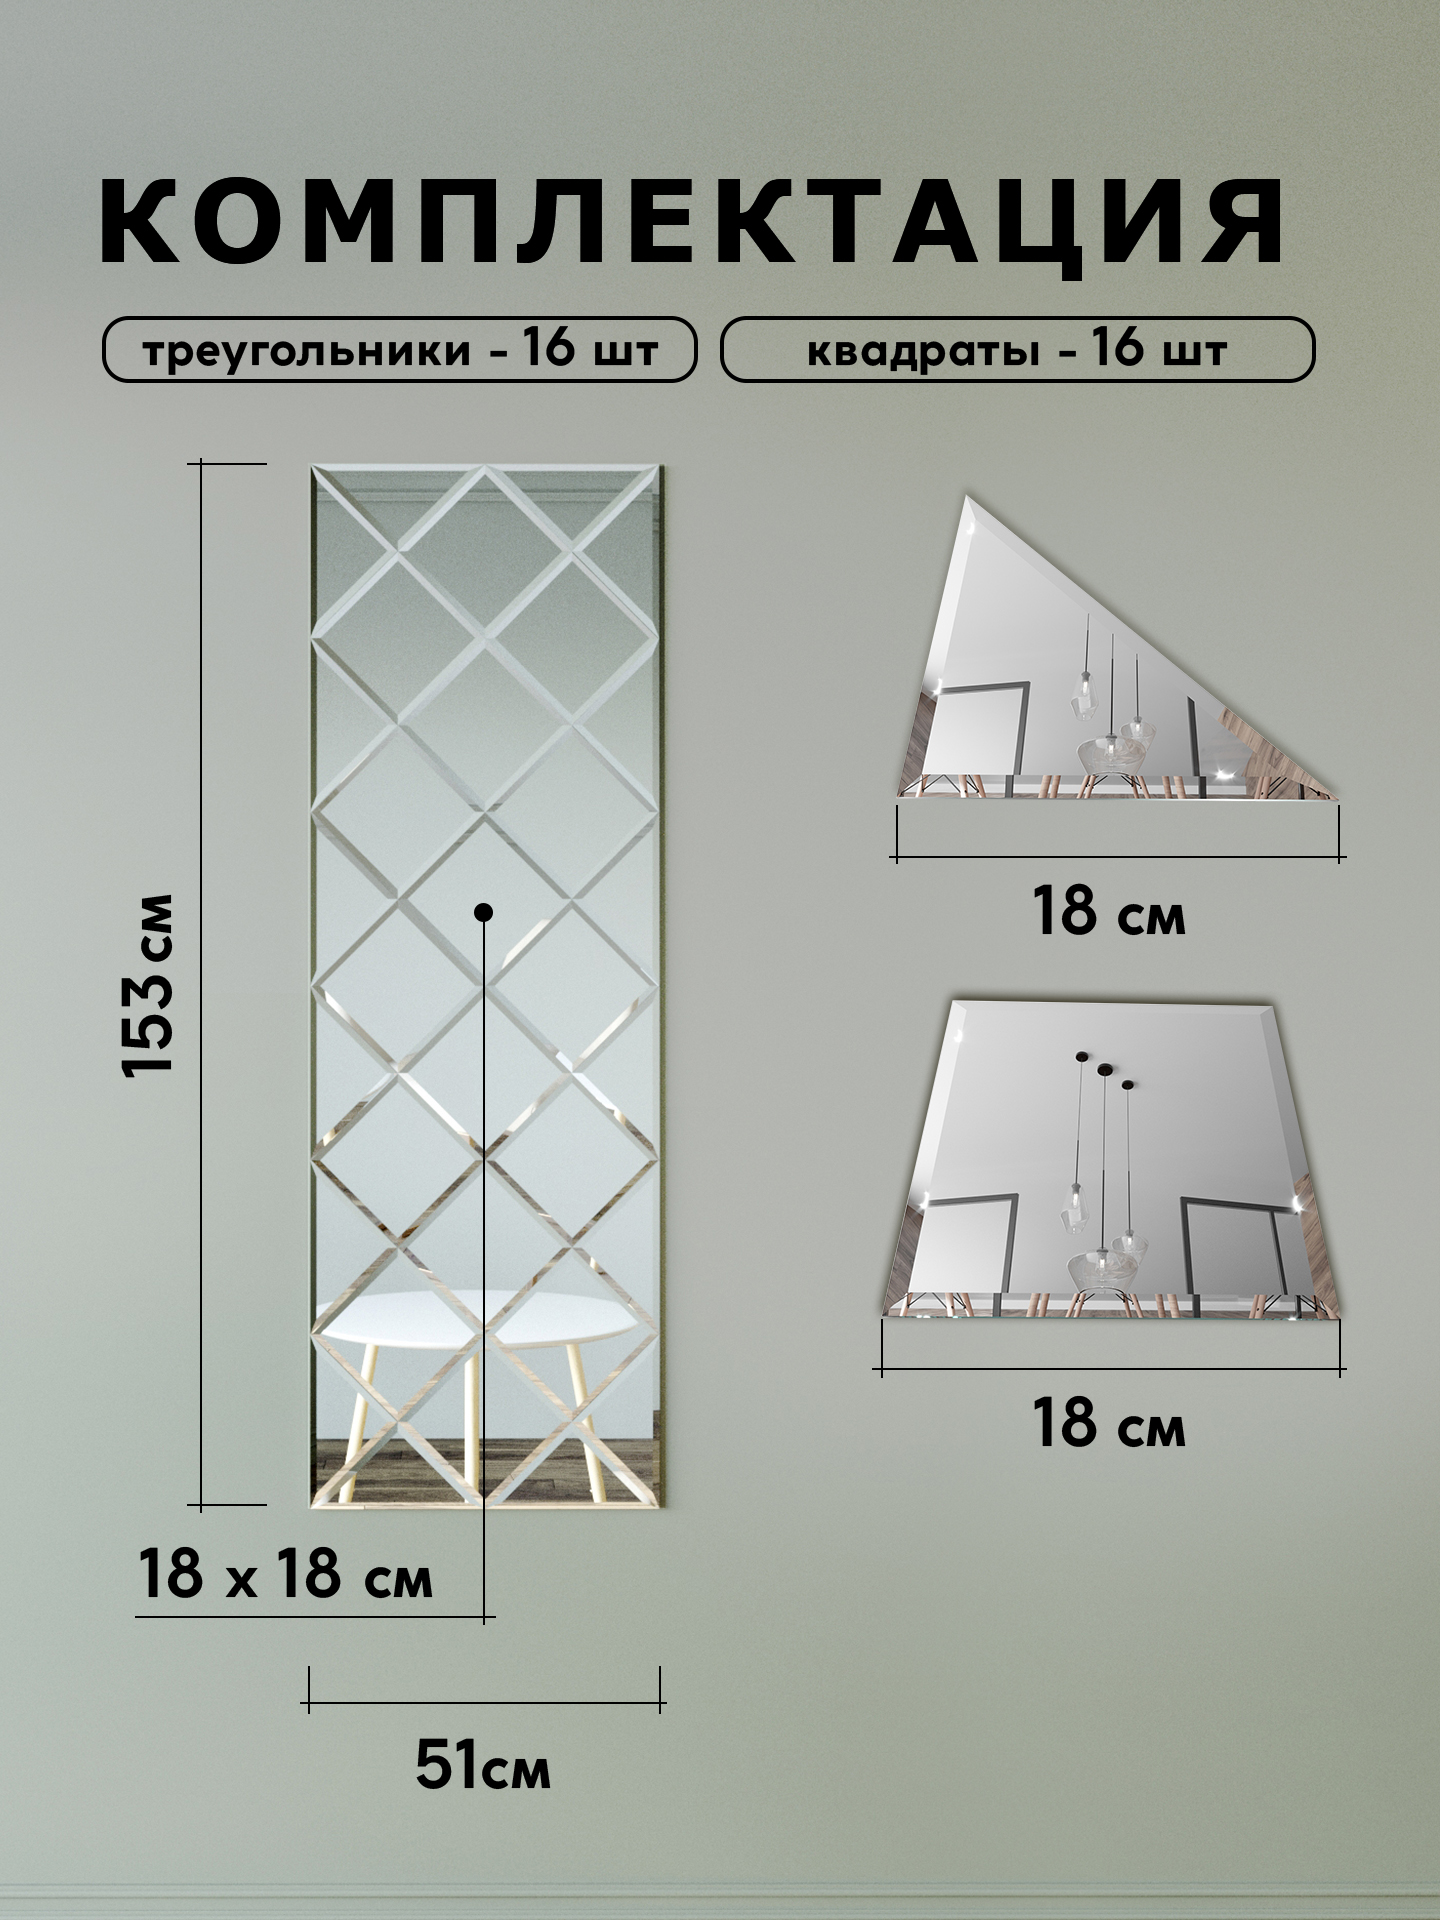 Зеркальное панно на стену из зеркальной плитки 18 см с фацетом 10 мм (размер 51х153см) интернет магазин zerkalnaya-plitka.ru